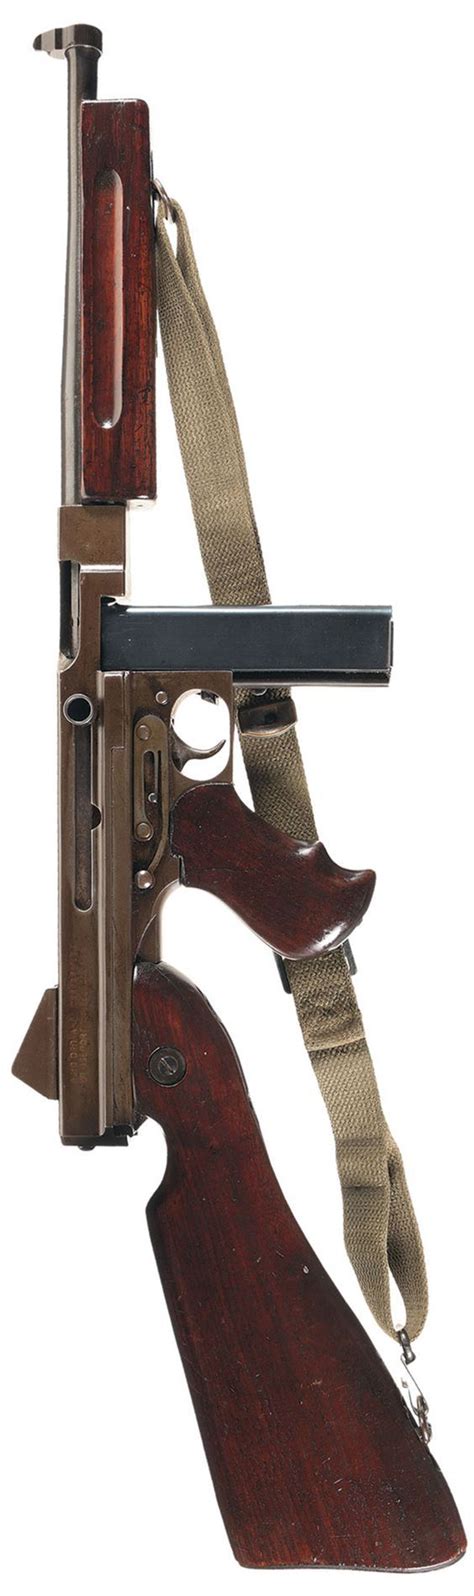 THOMPSON SUBMACHINE GUN CALIBER 45 M1 A1 NO 432620 AUTO ORDNANCE